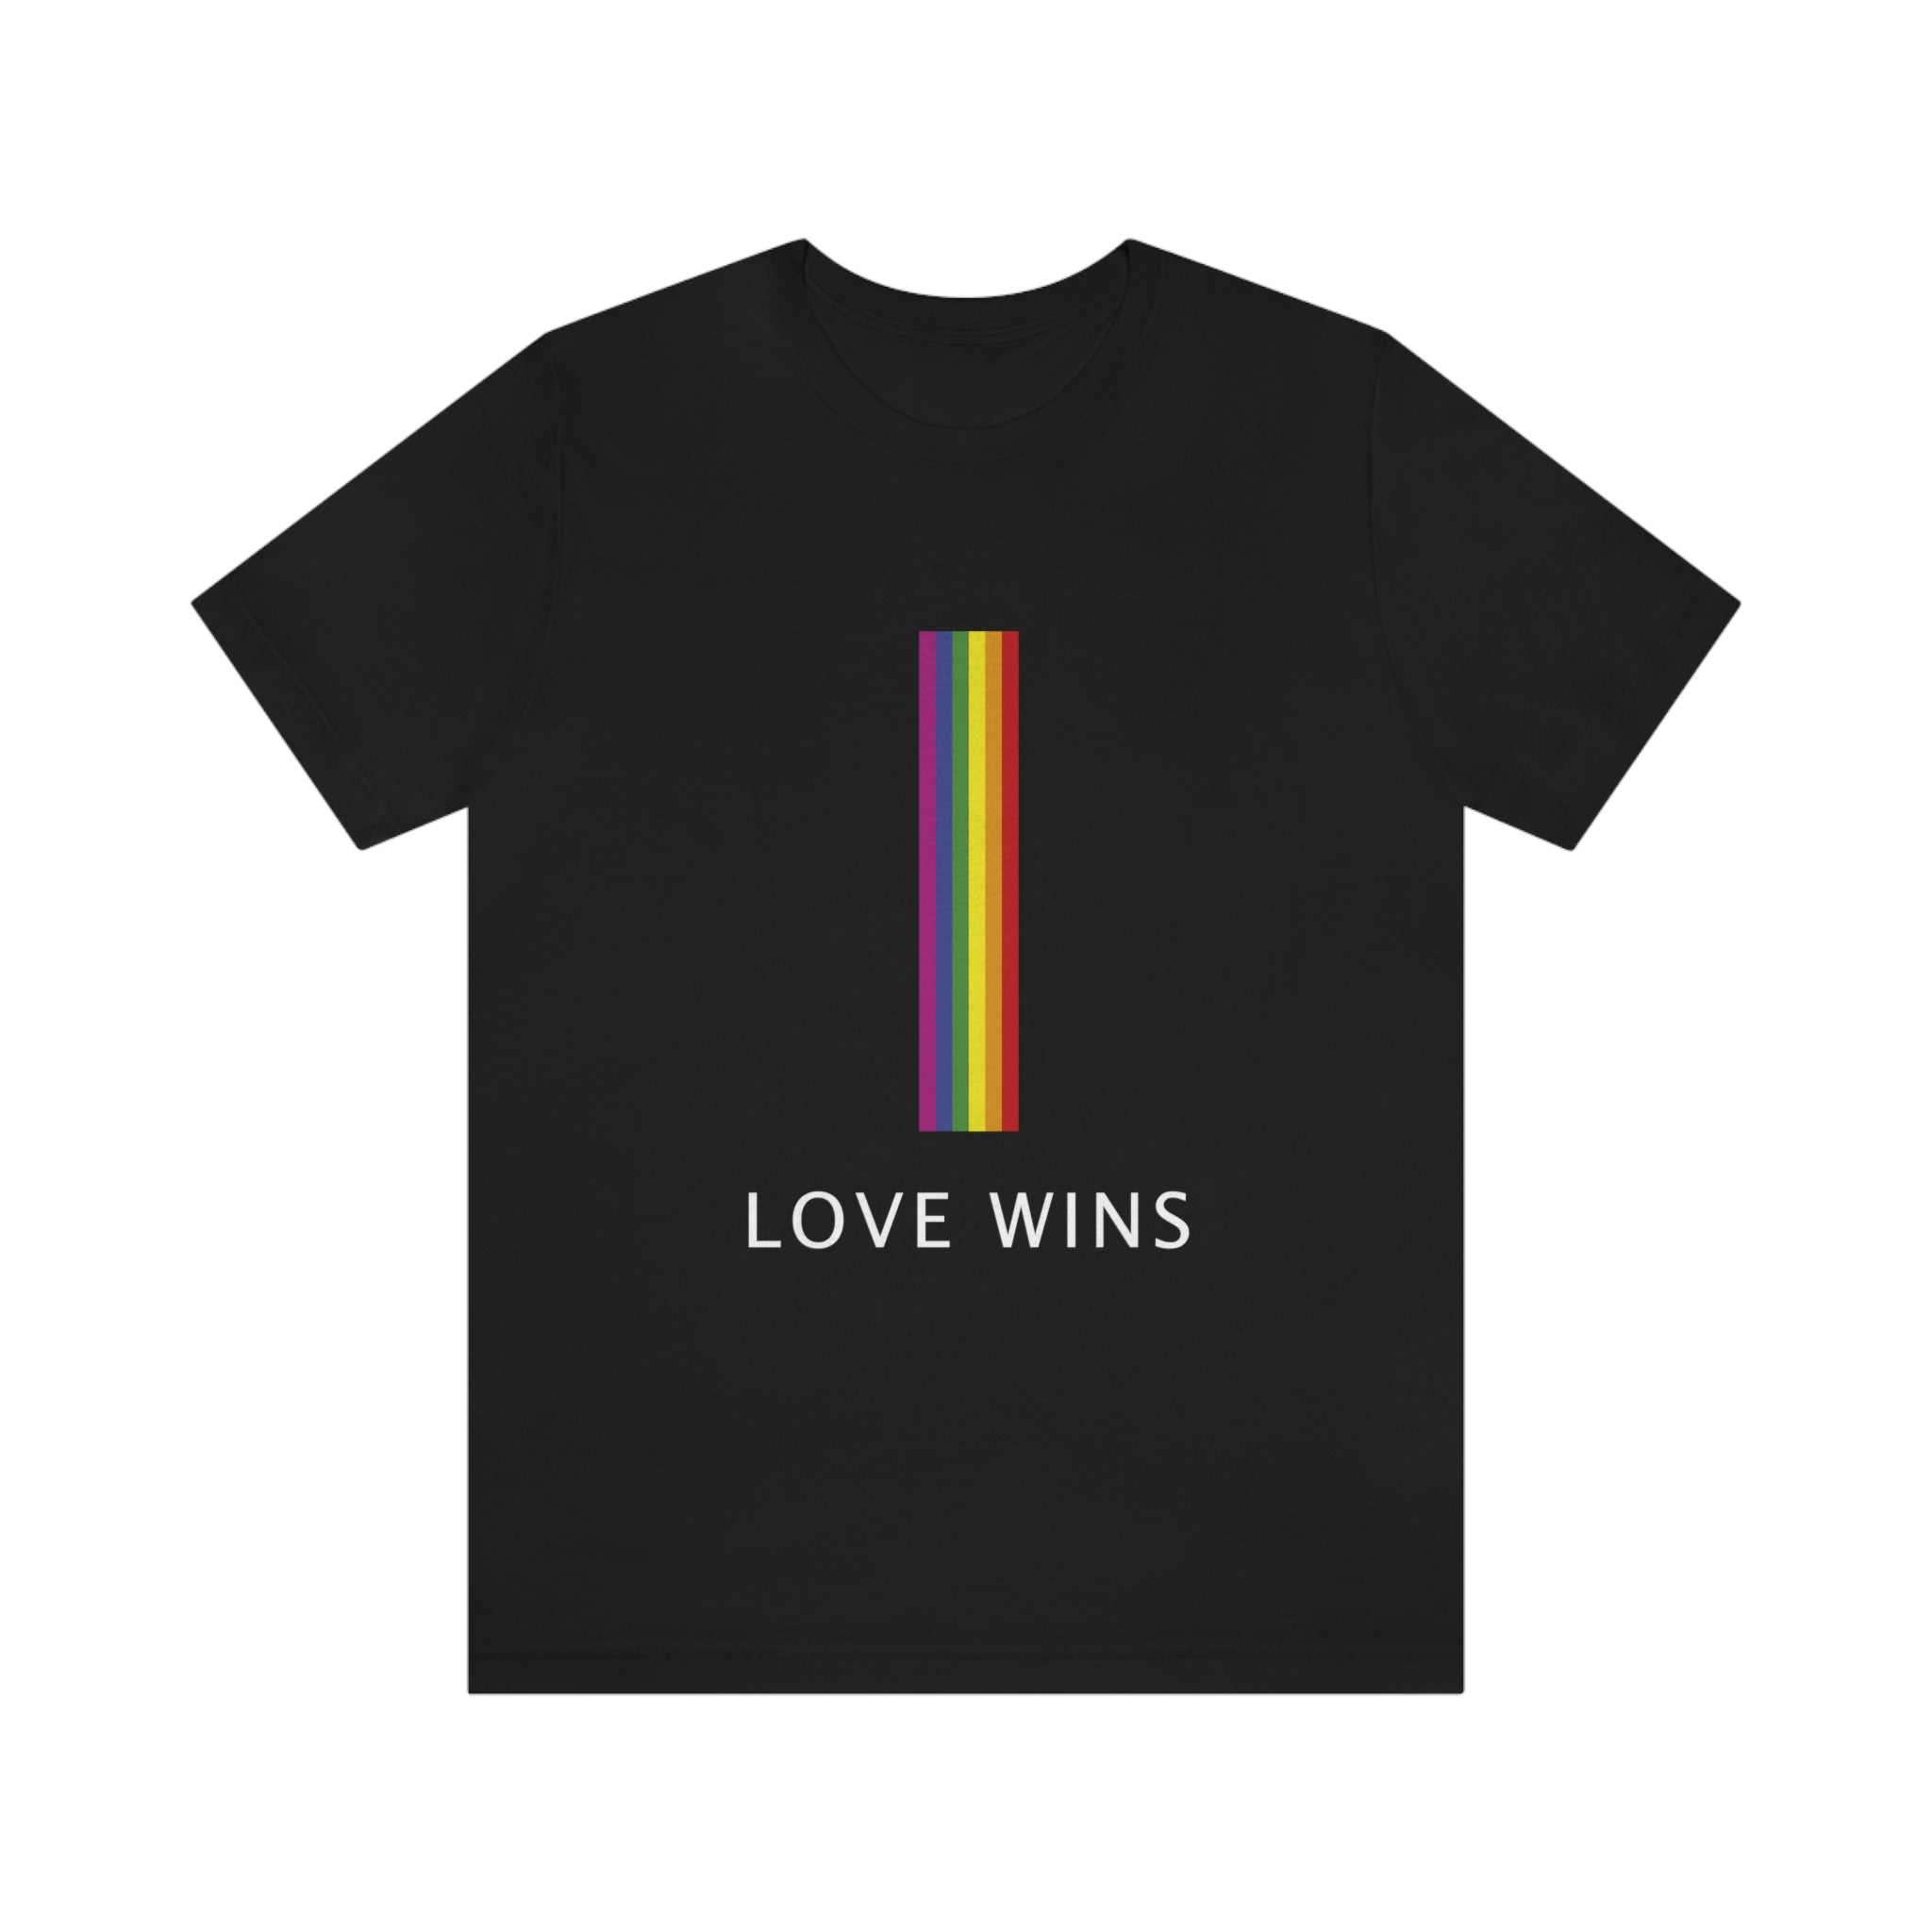 Love Wins! : Unisex 100% Cotton T-Shirt